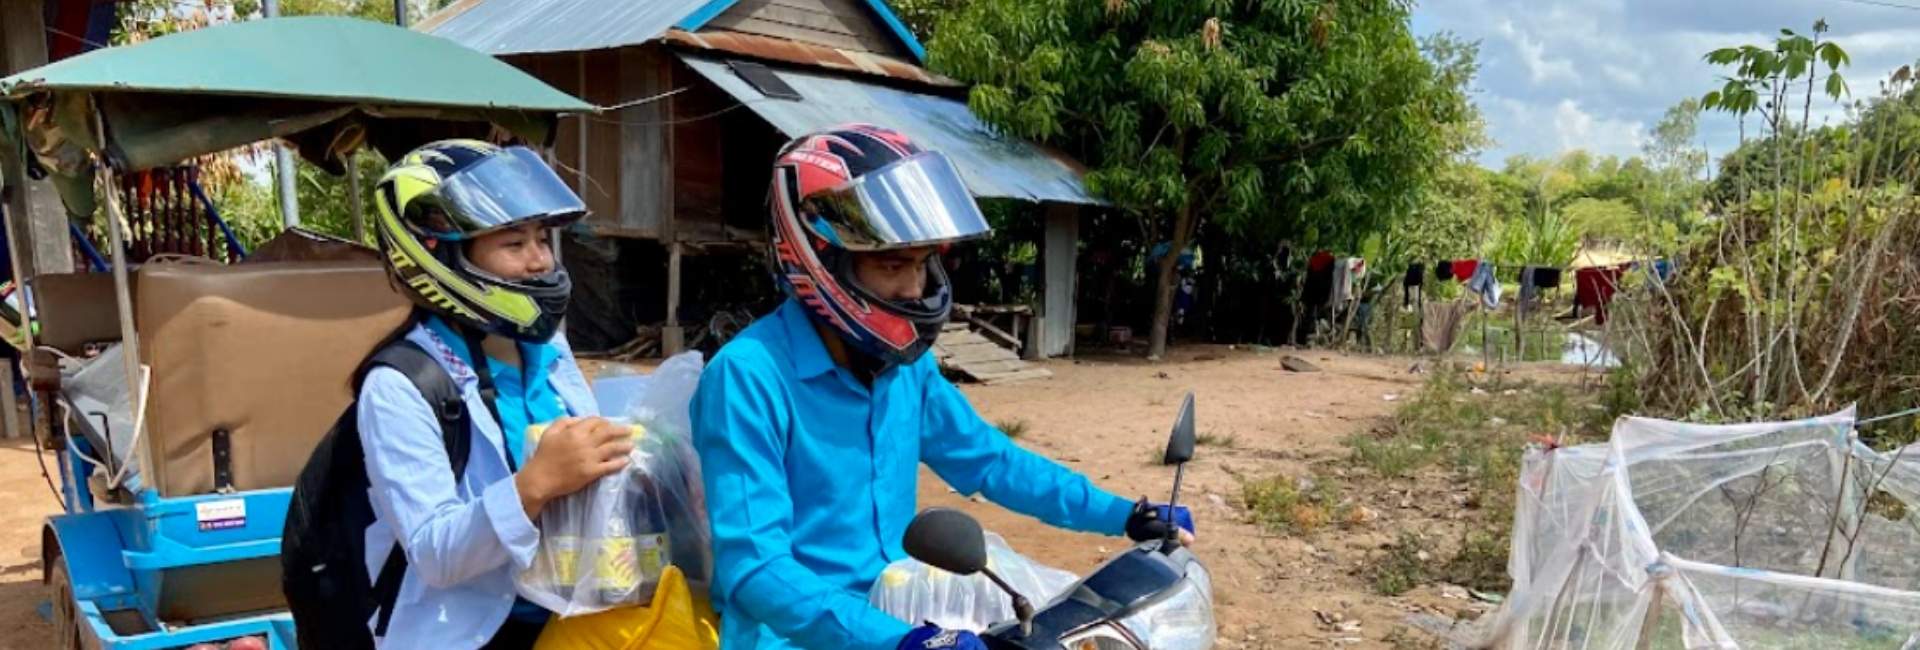 Buy a Motorbike to Help Children Get to School